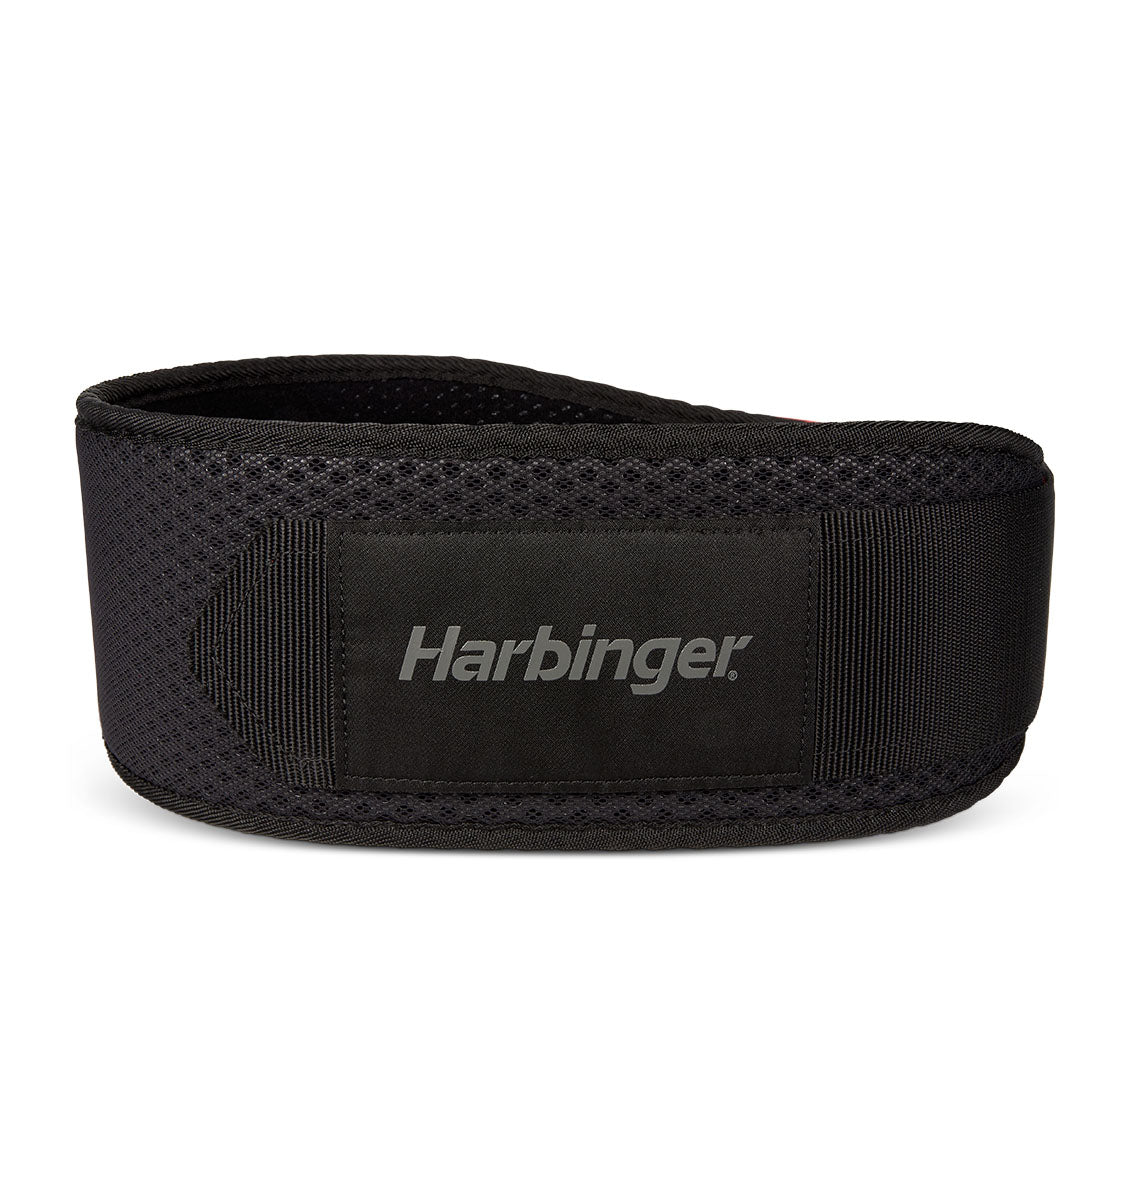 Harbinger Hexcore Weight Lifting Belt - Men's - Black/Red - 2